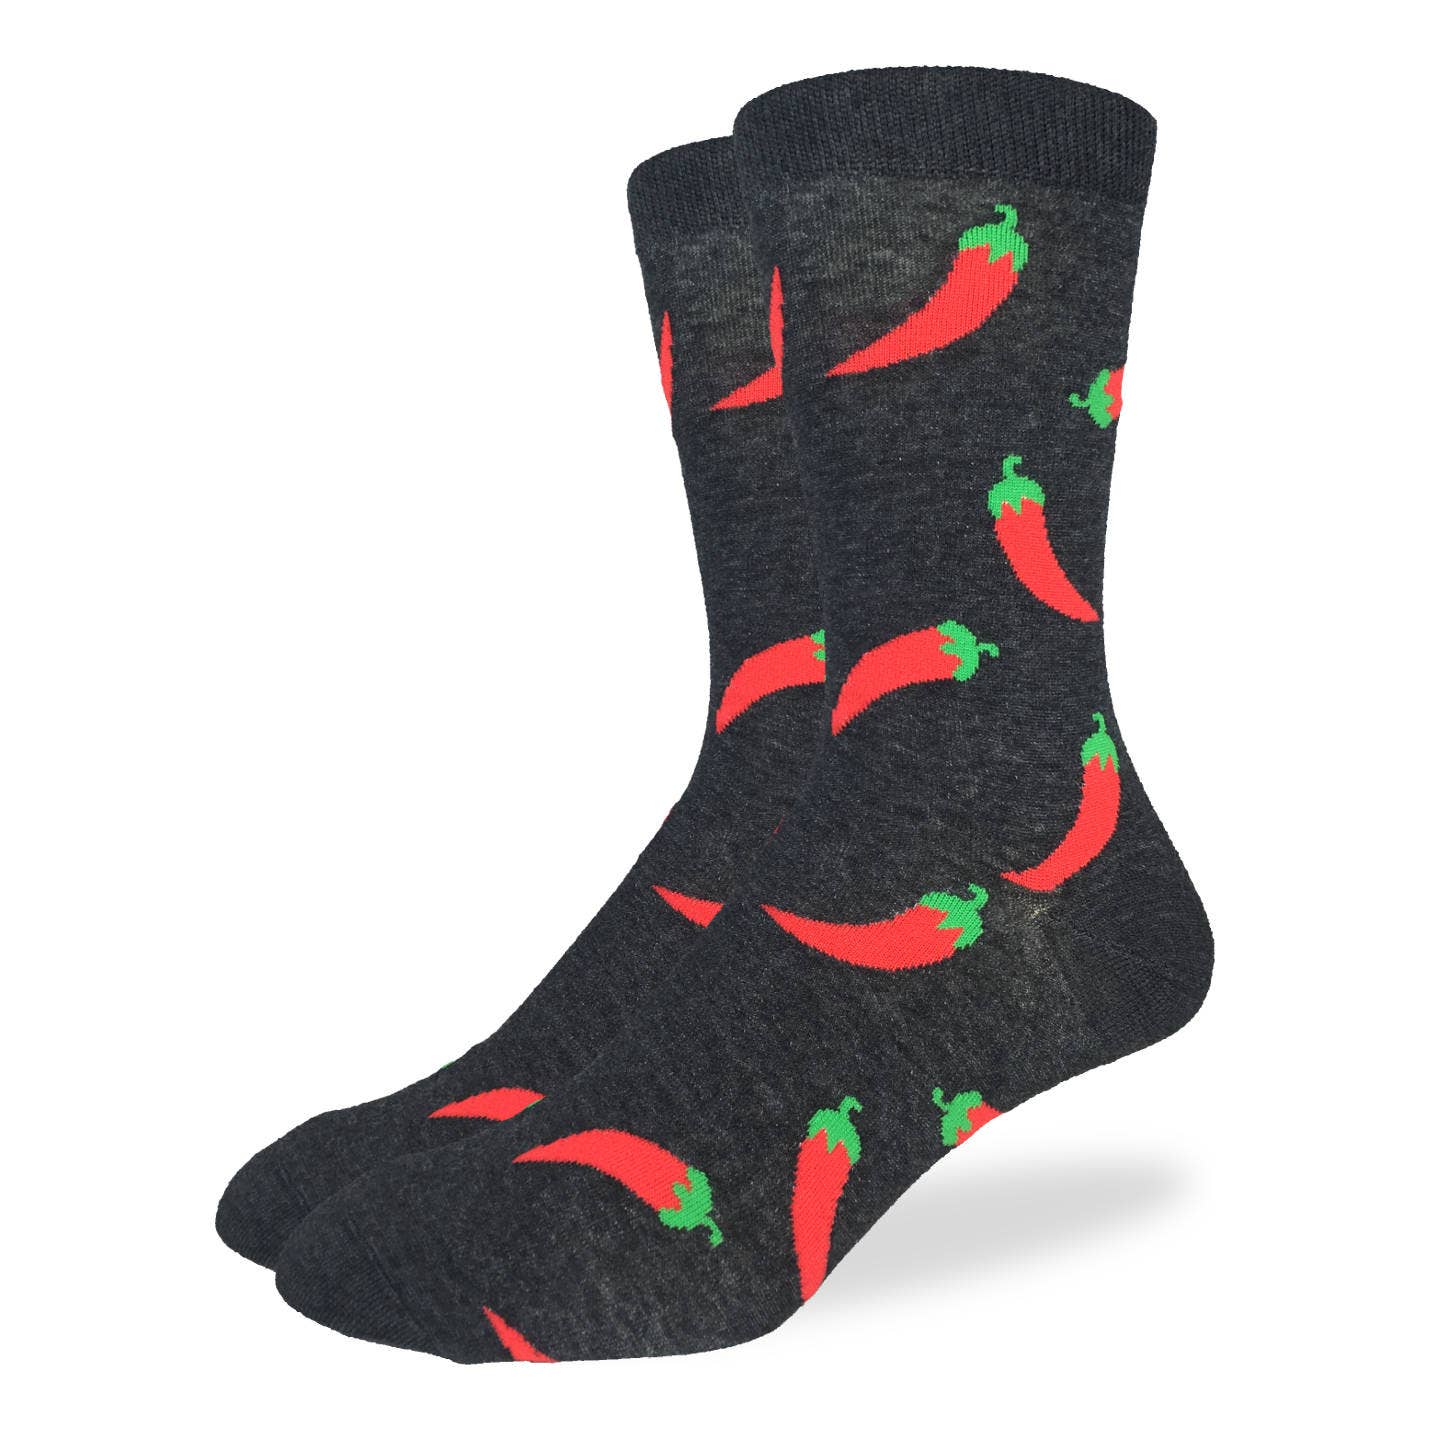 men's socks with chili pepper design